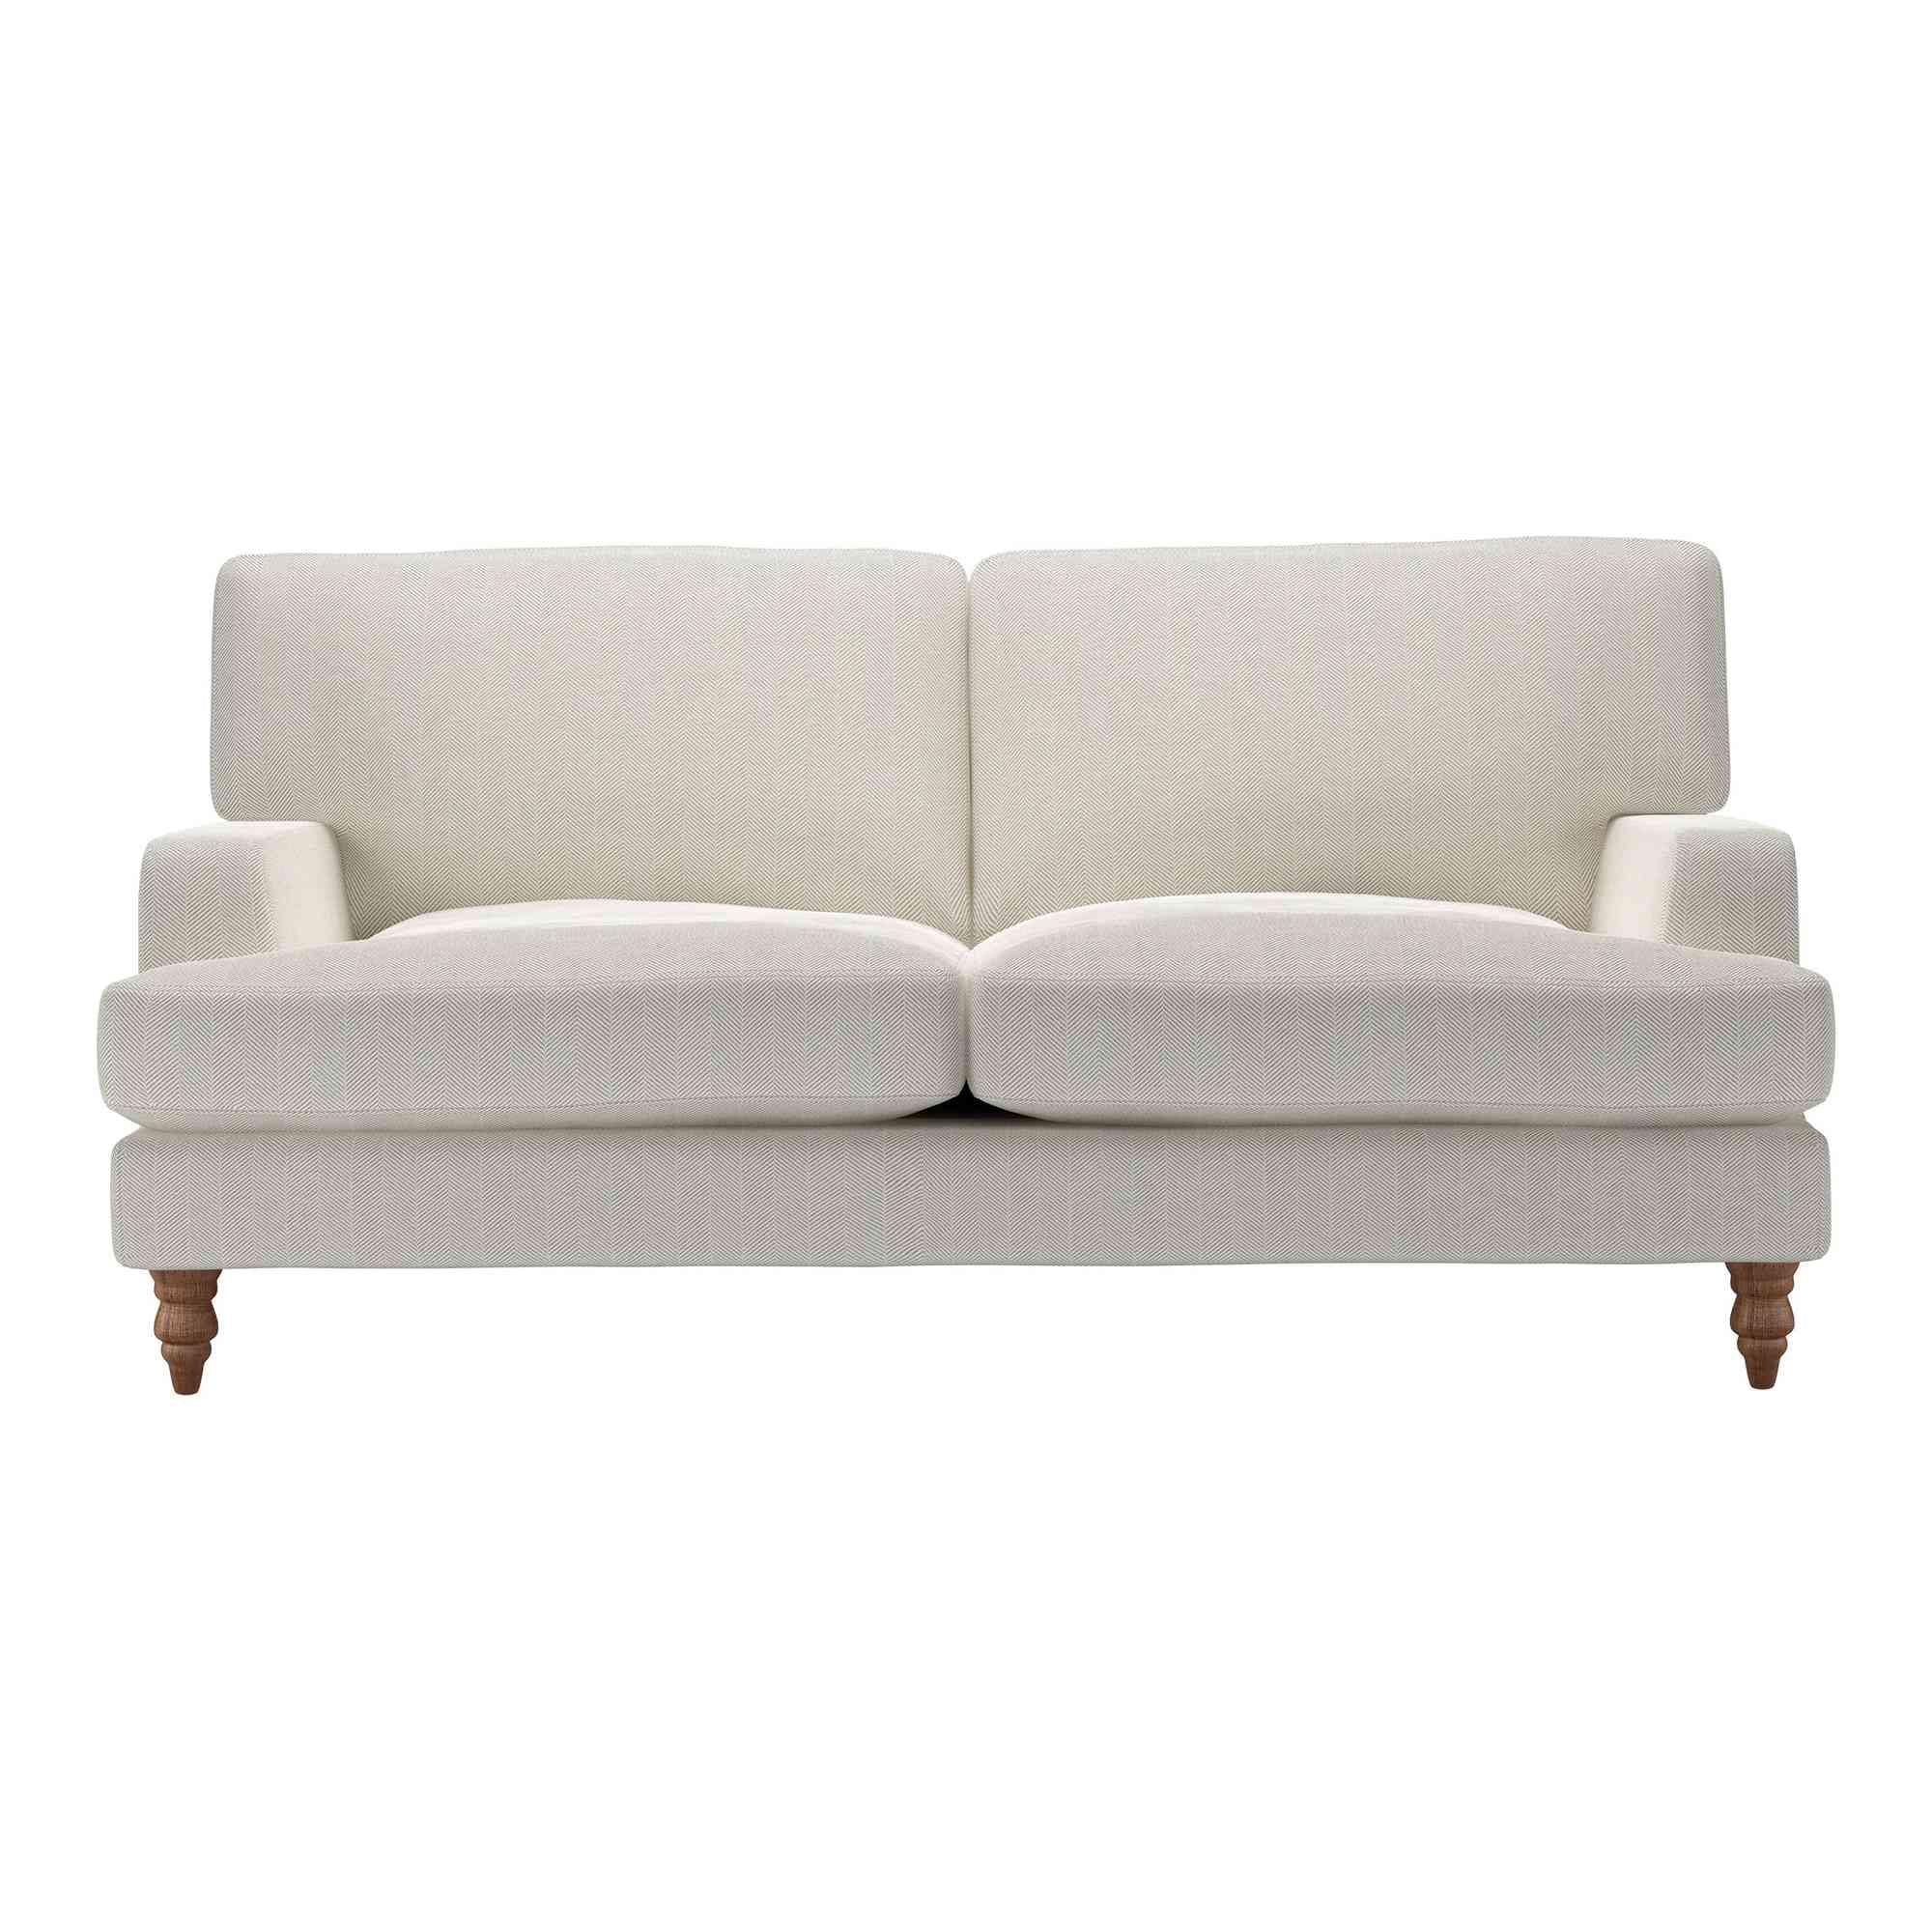 Isla Clay House Herringbone Weave Sofa - 2.5 Seater